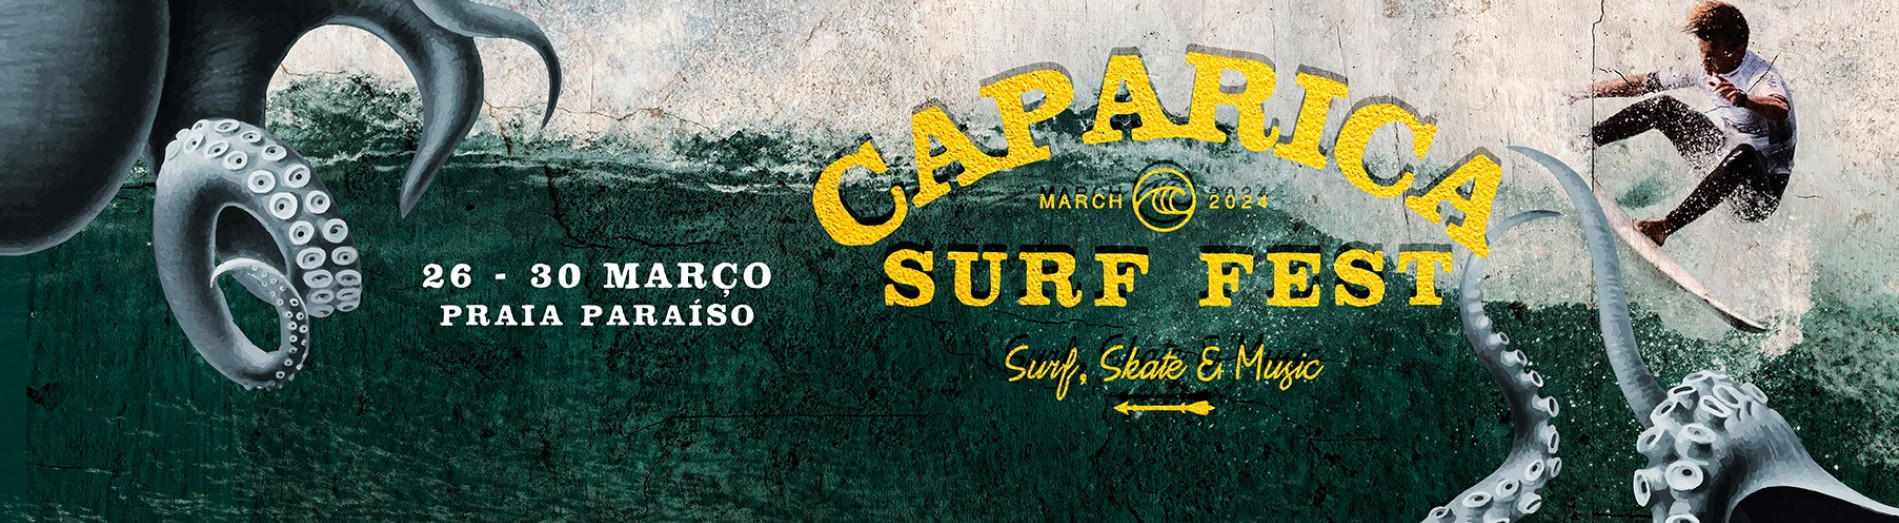 caparica surf fest